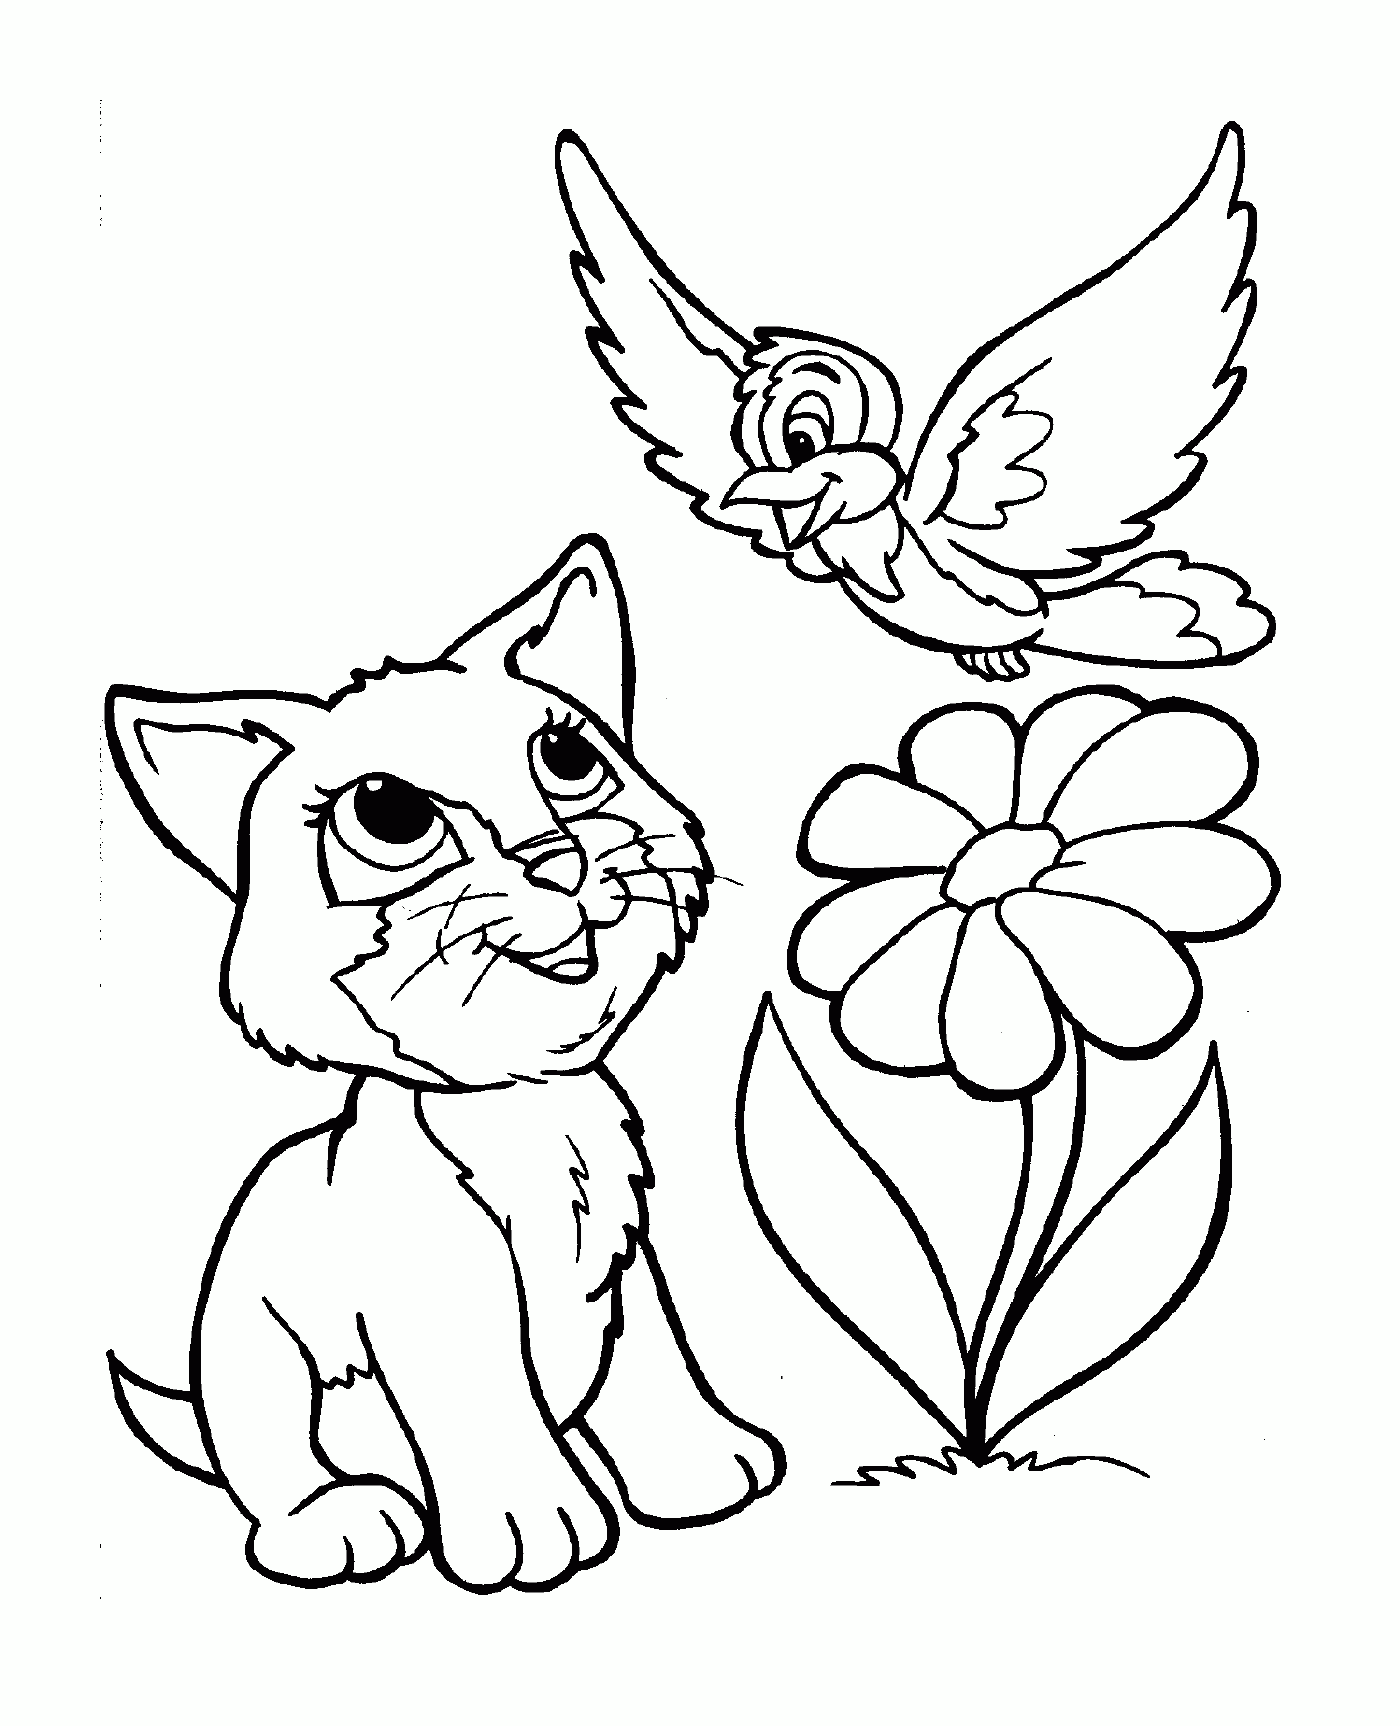  फूल के बगल में बैठा एक दोस्ताना बिल्ली 